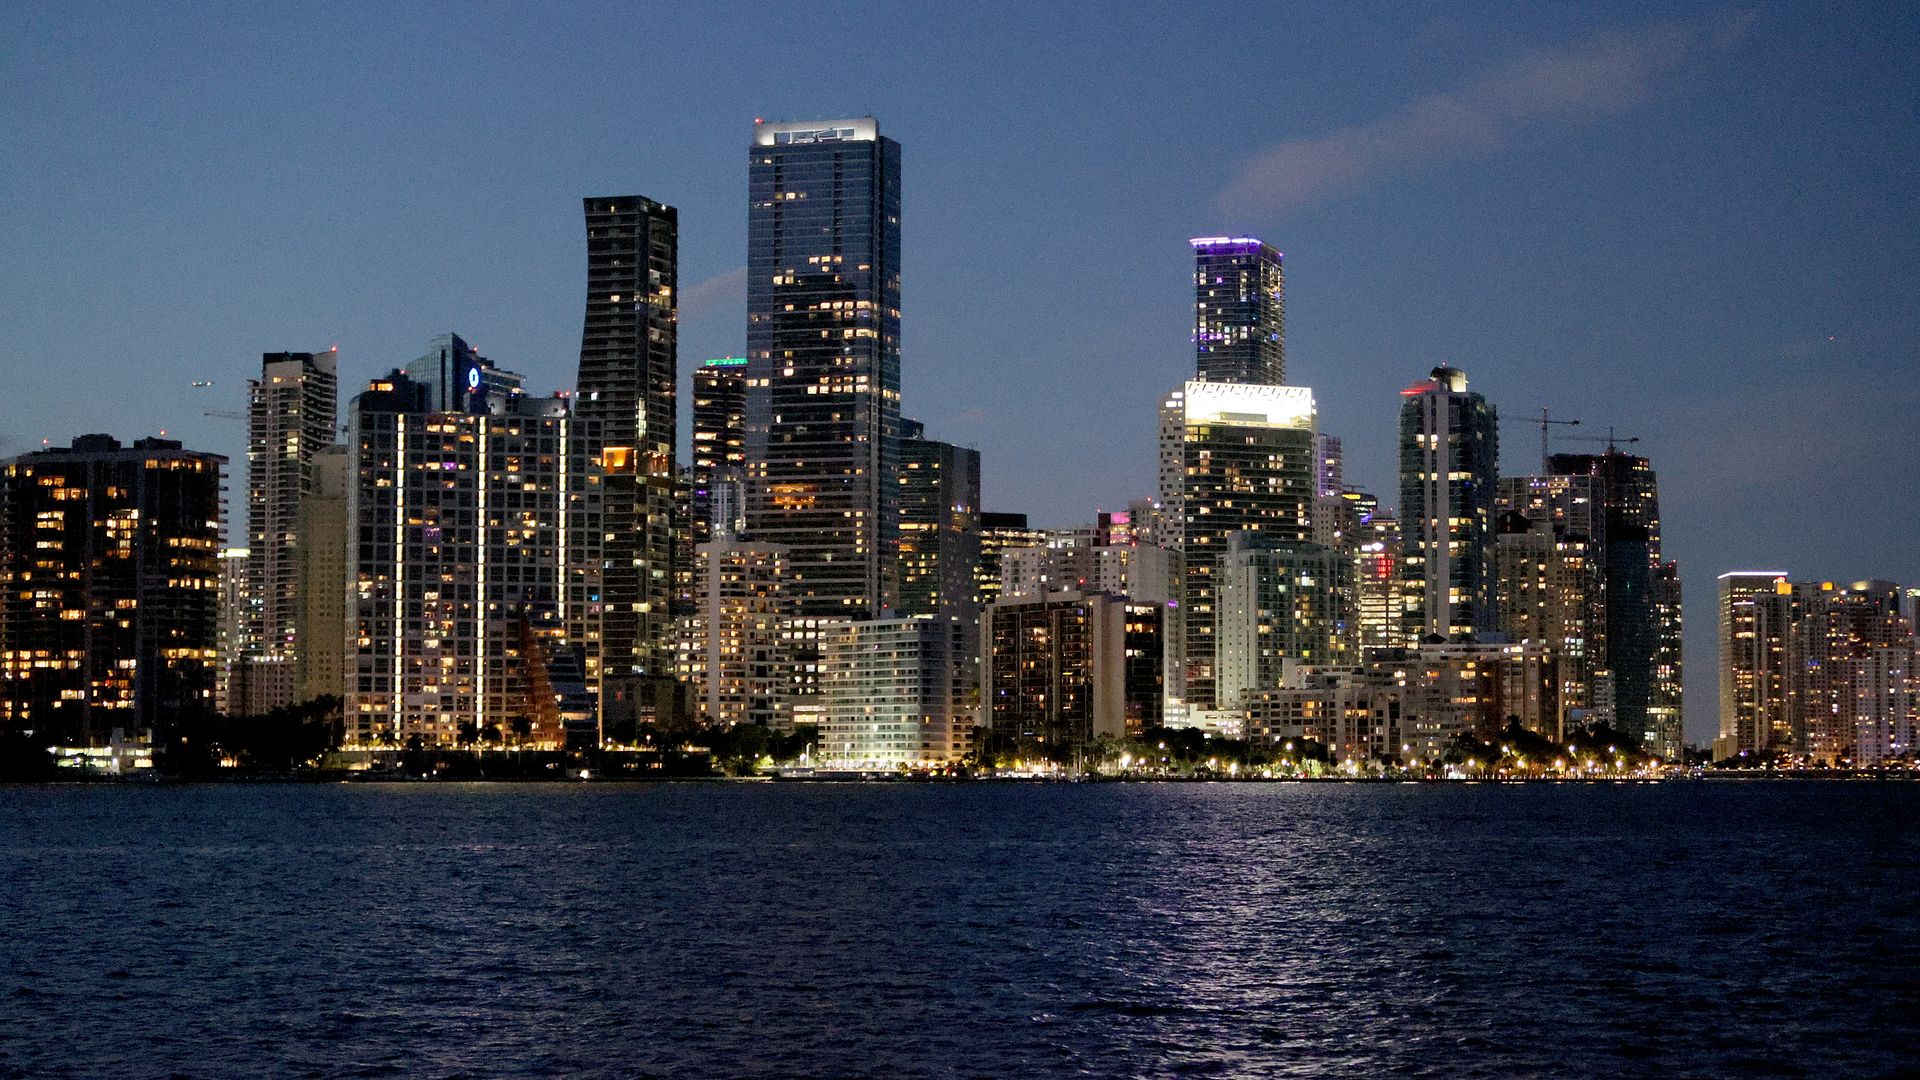 Miami skyline at night.